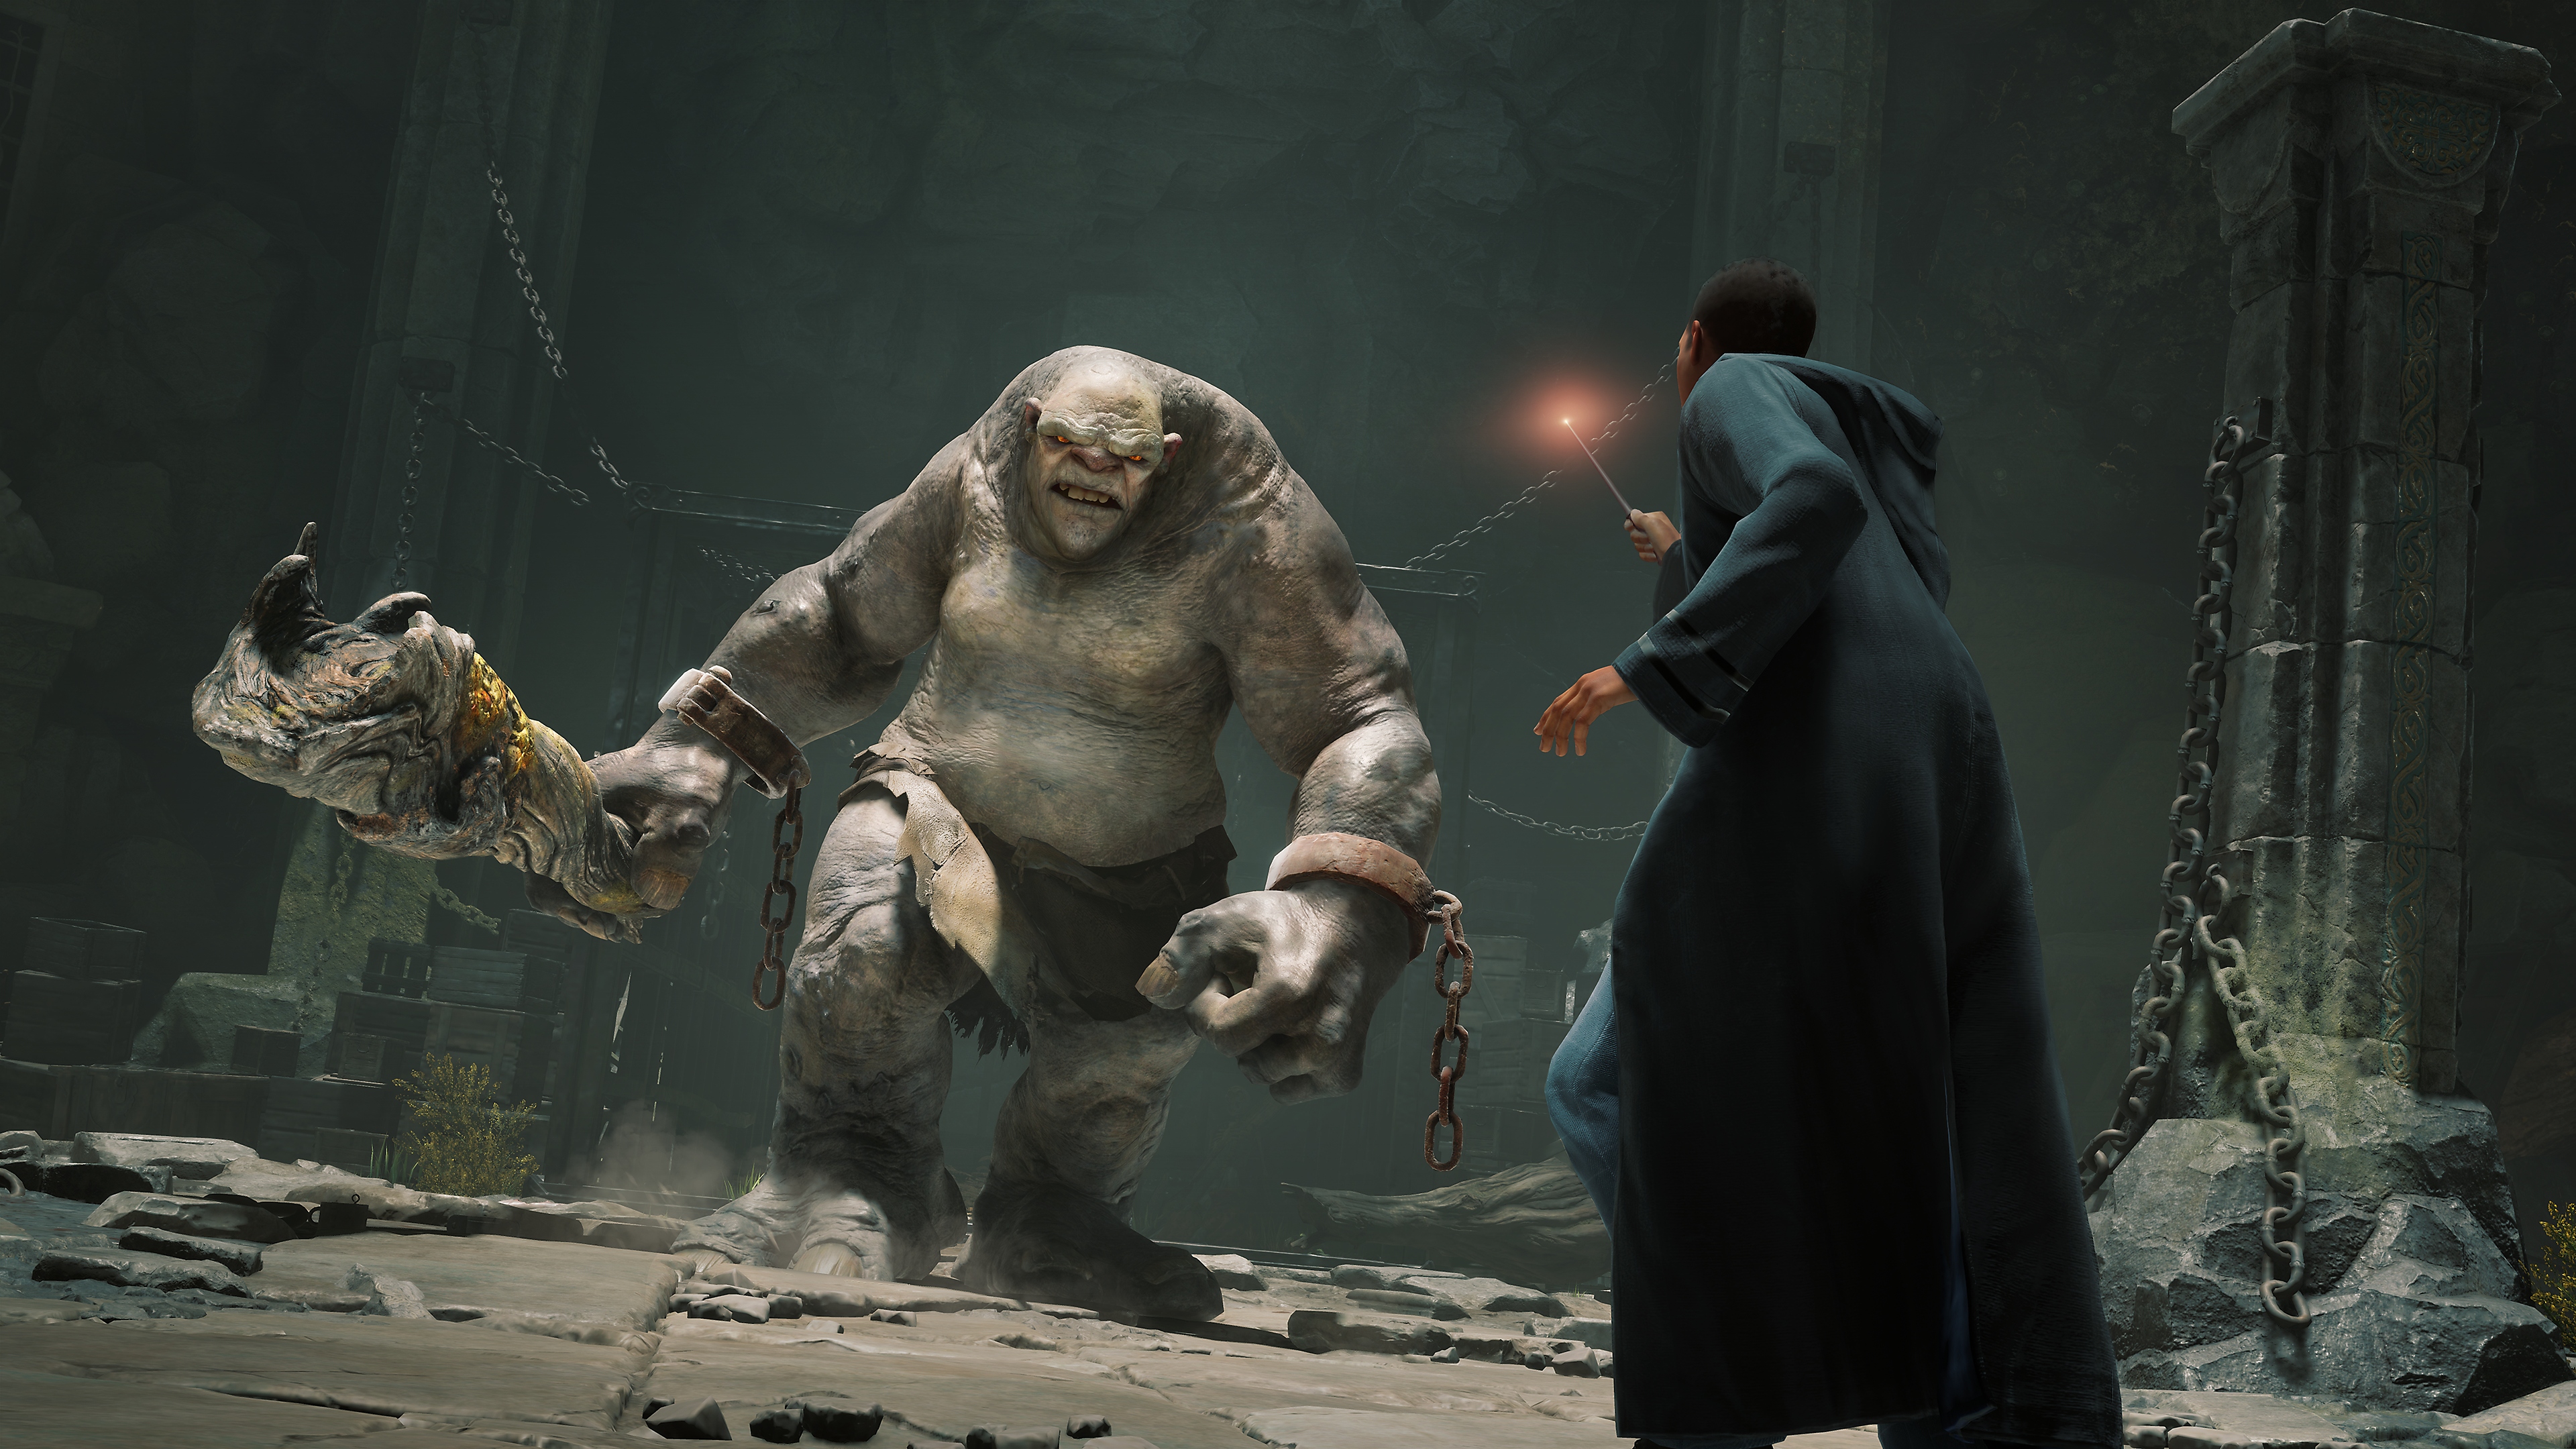 Snimka iz igre Hogwarts Legacy koja prikazuje trola koji trči prema učeniku